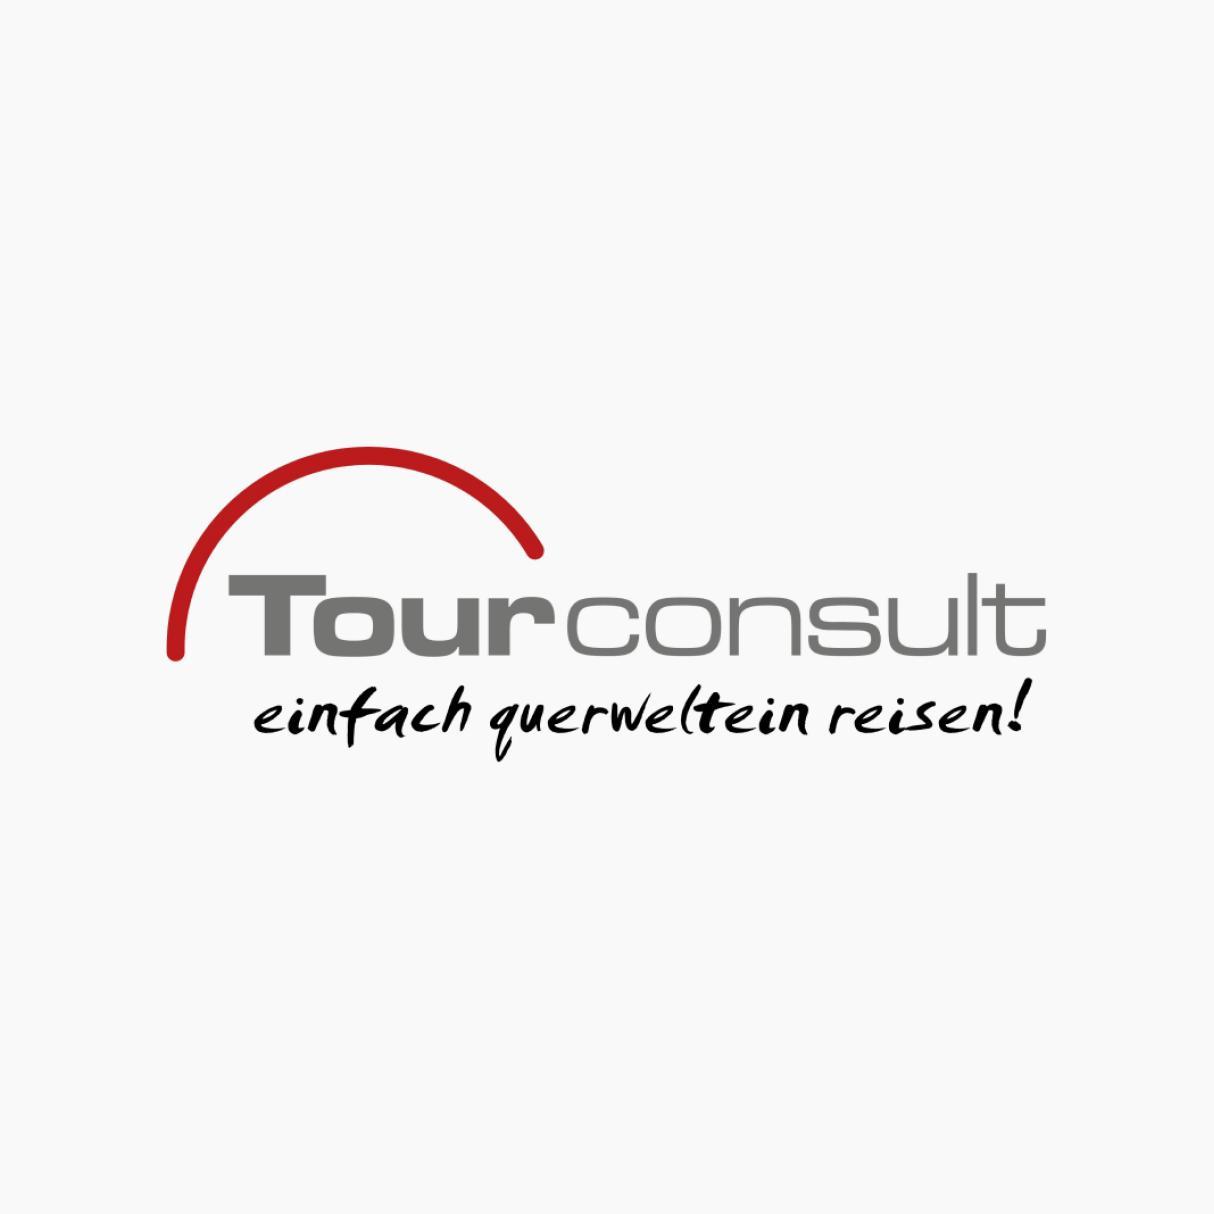 Tour Consult logo